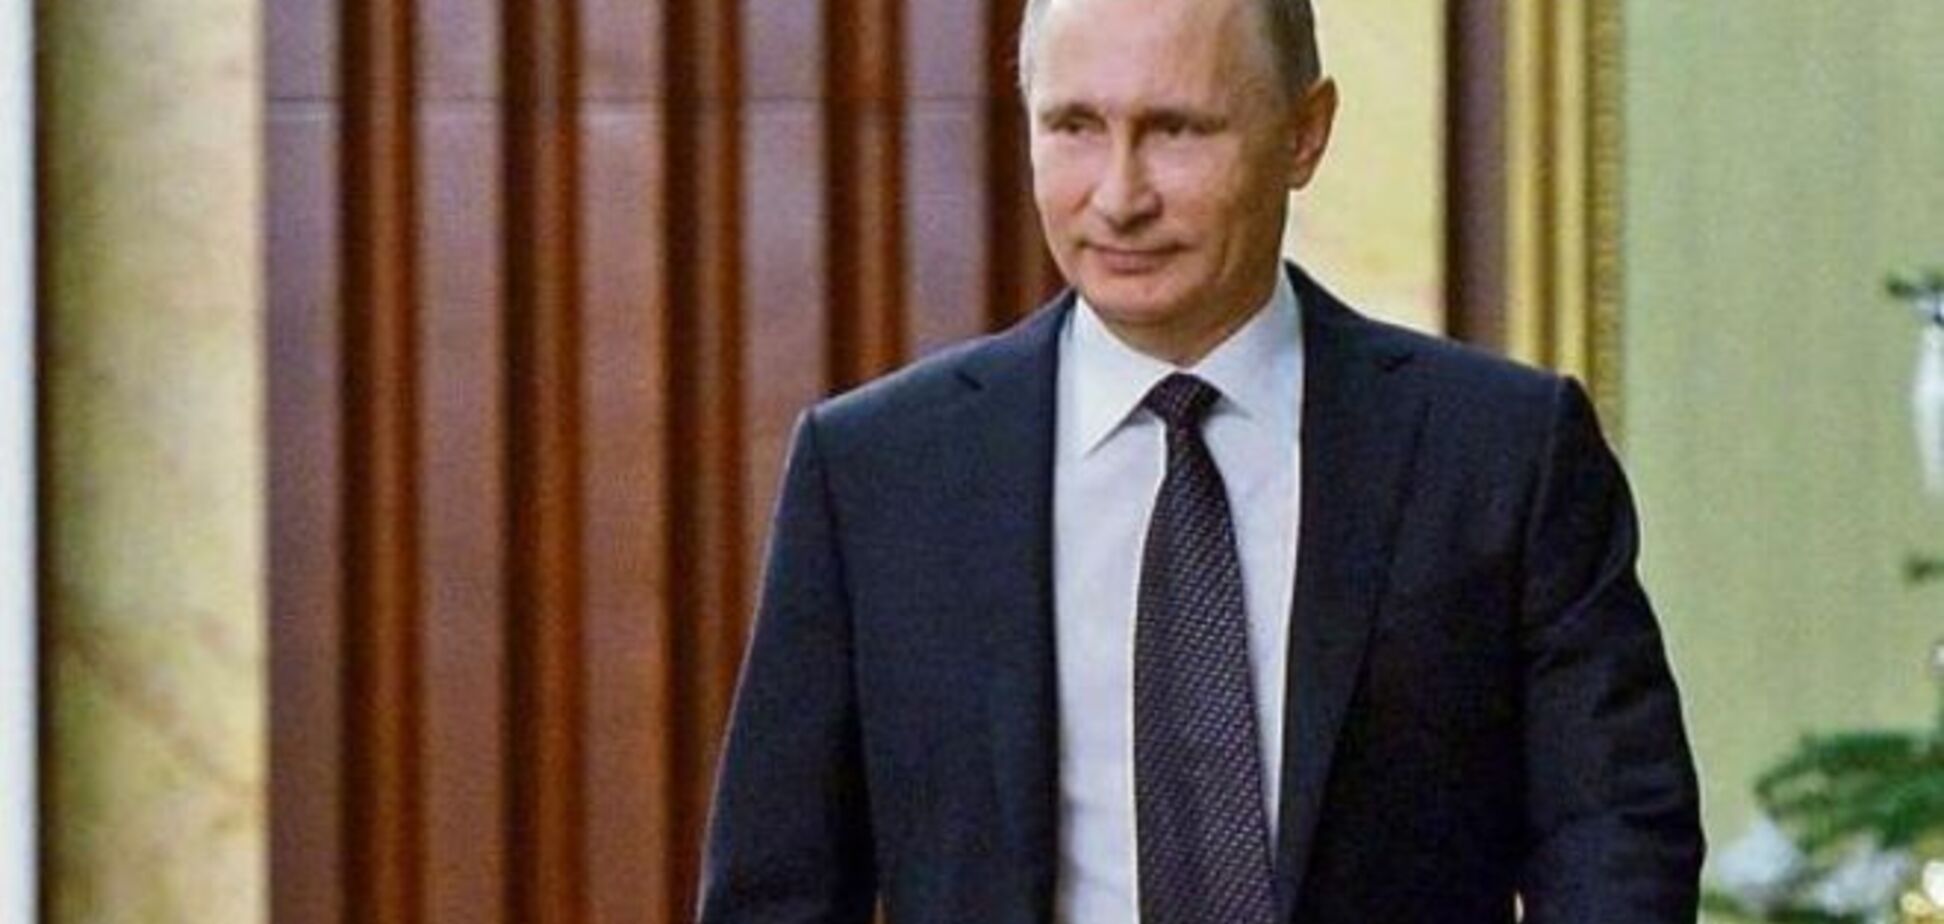 Путин хочет править Россией бесконечно долго - Кох